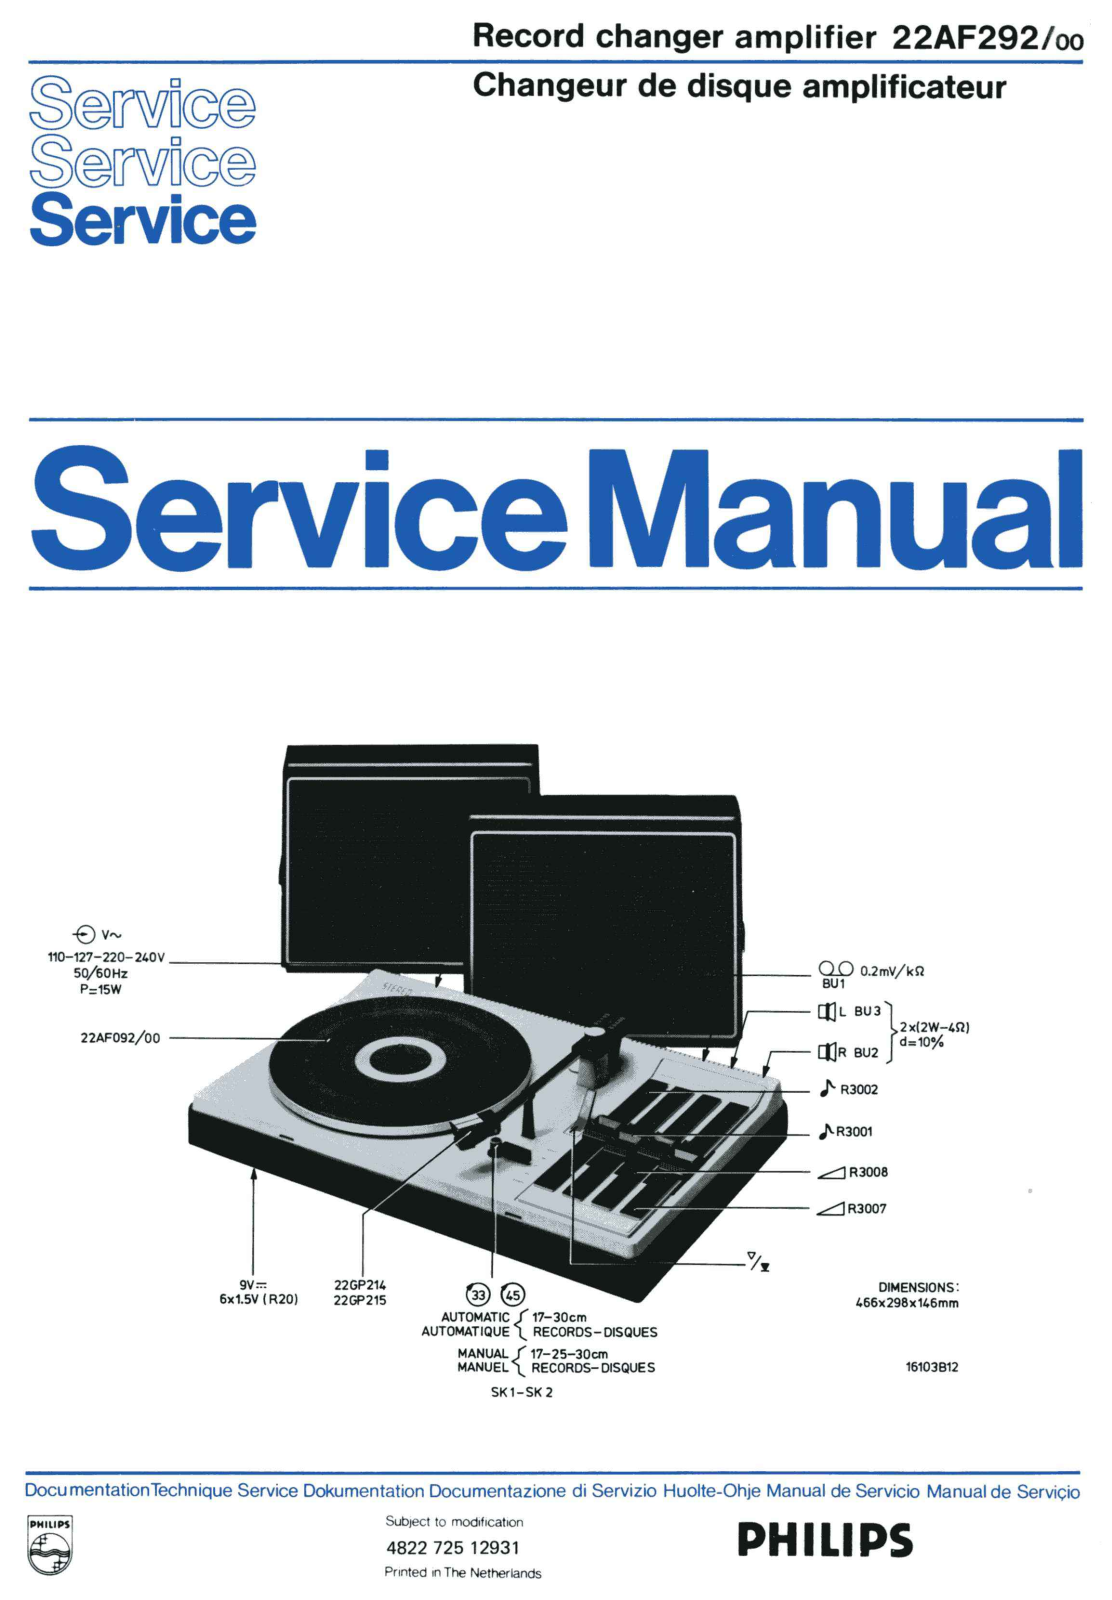 Philips 22-AF-292 Service Manual